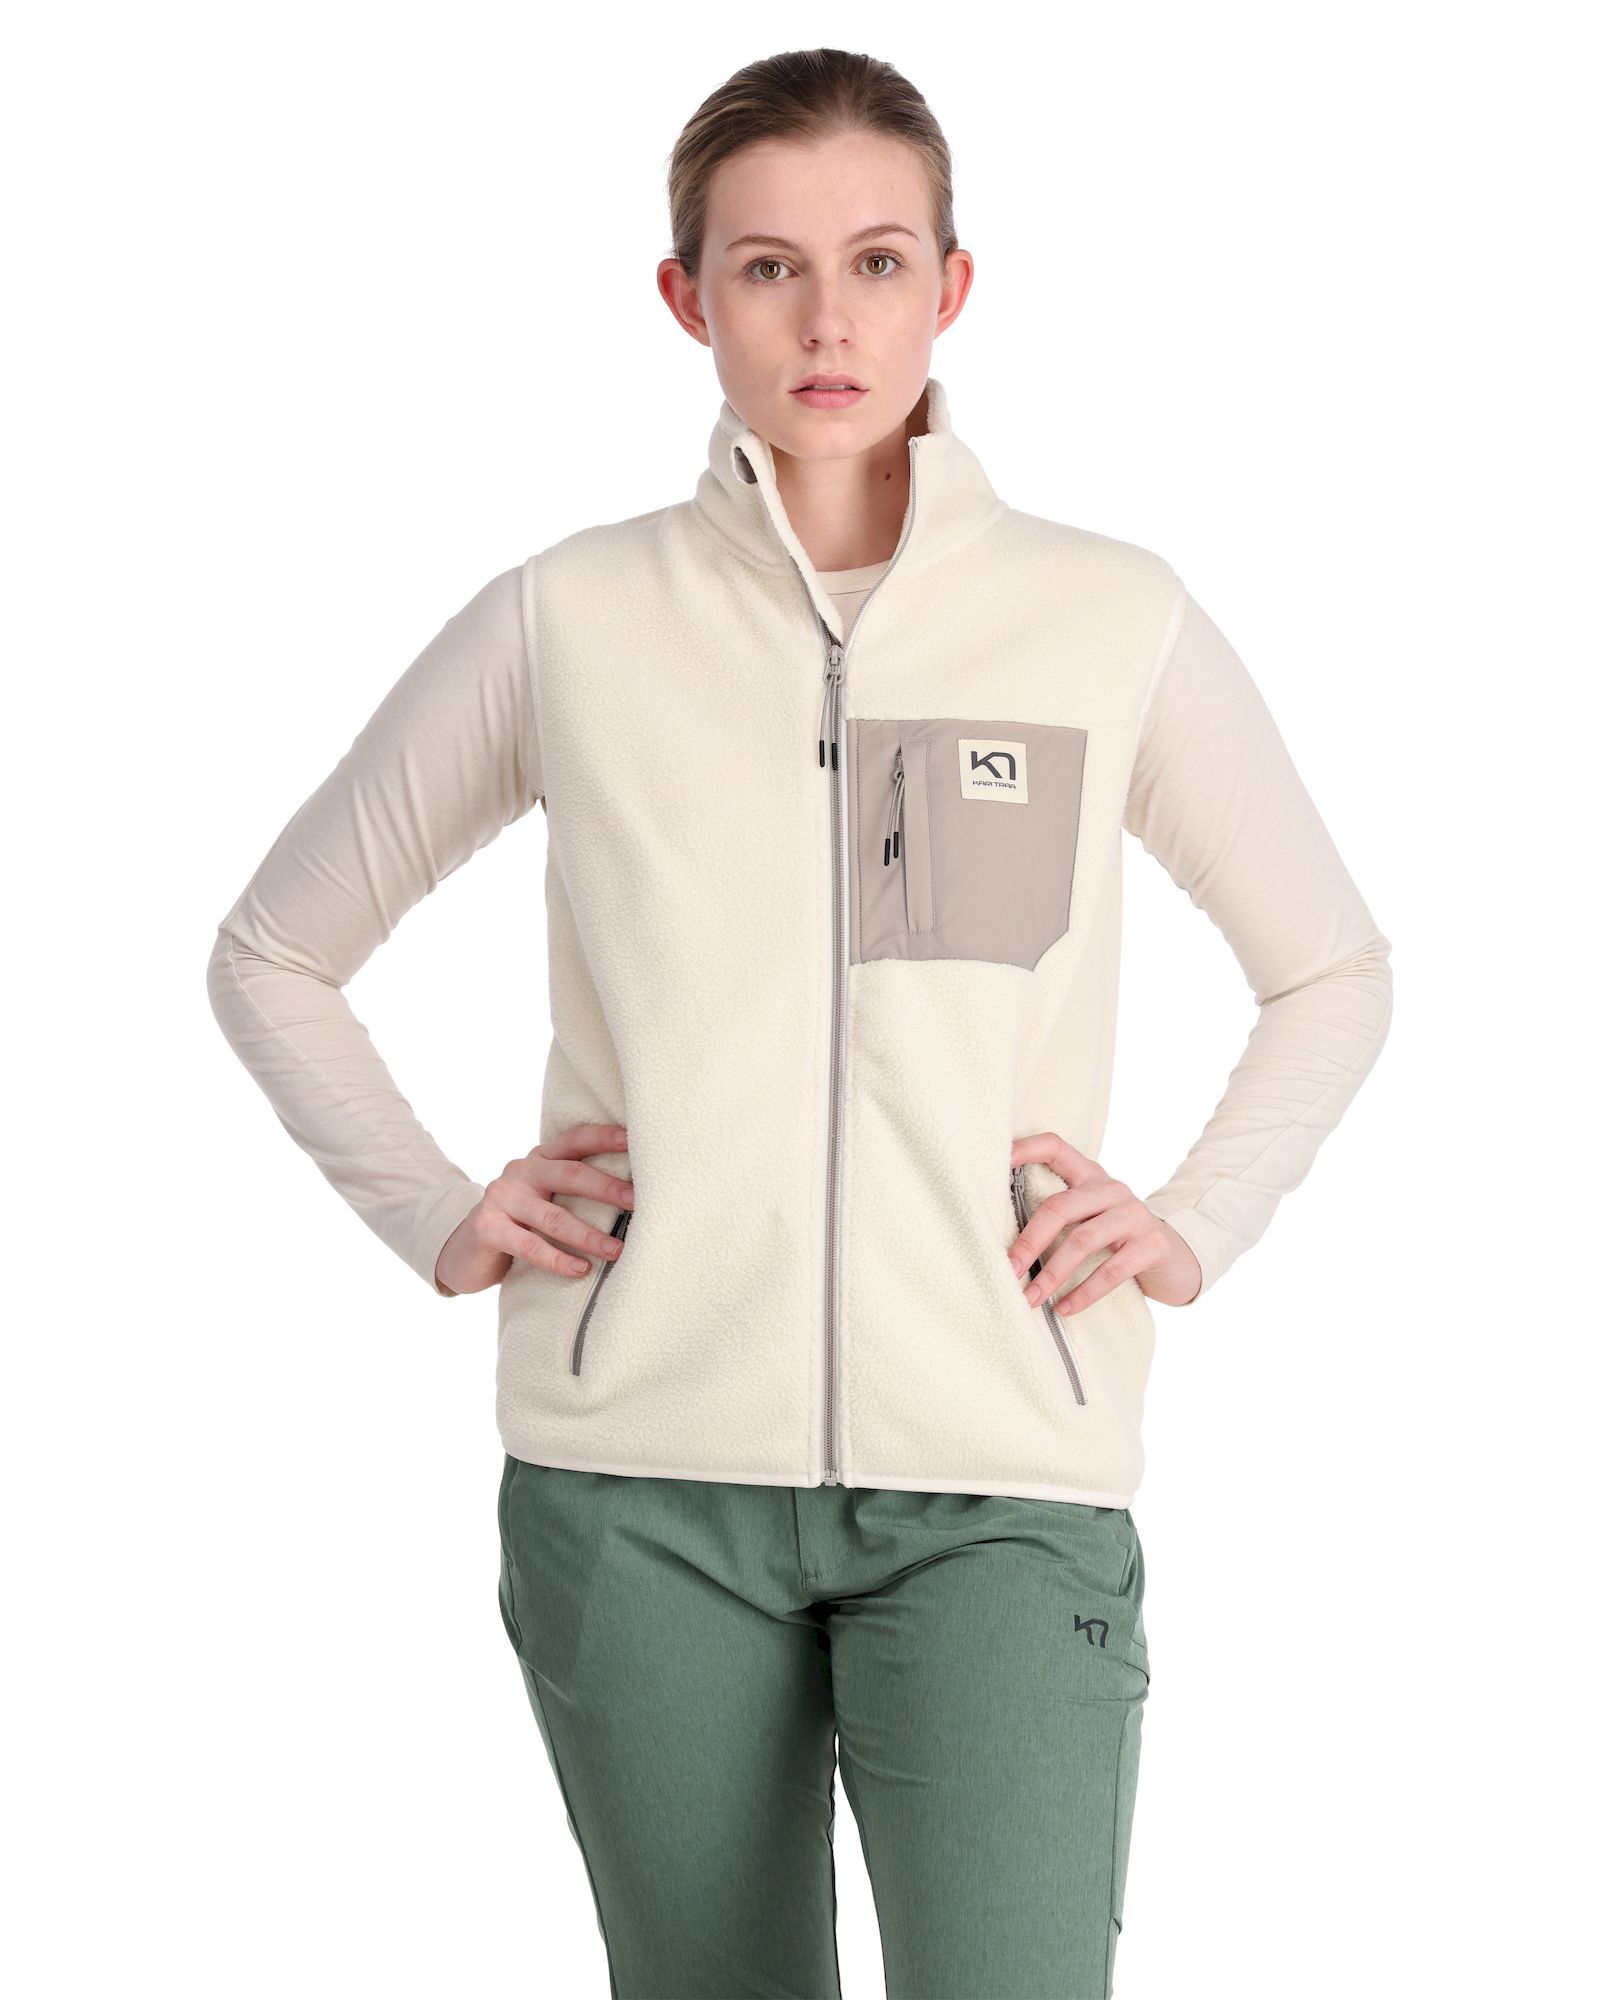 Kari Traa Rothe Fleece Vest - Fleece jacket - Women's | Hardloop